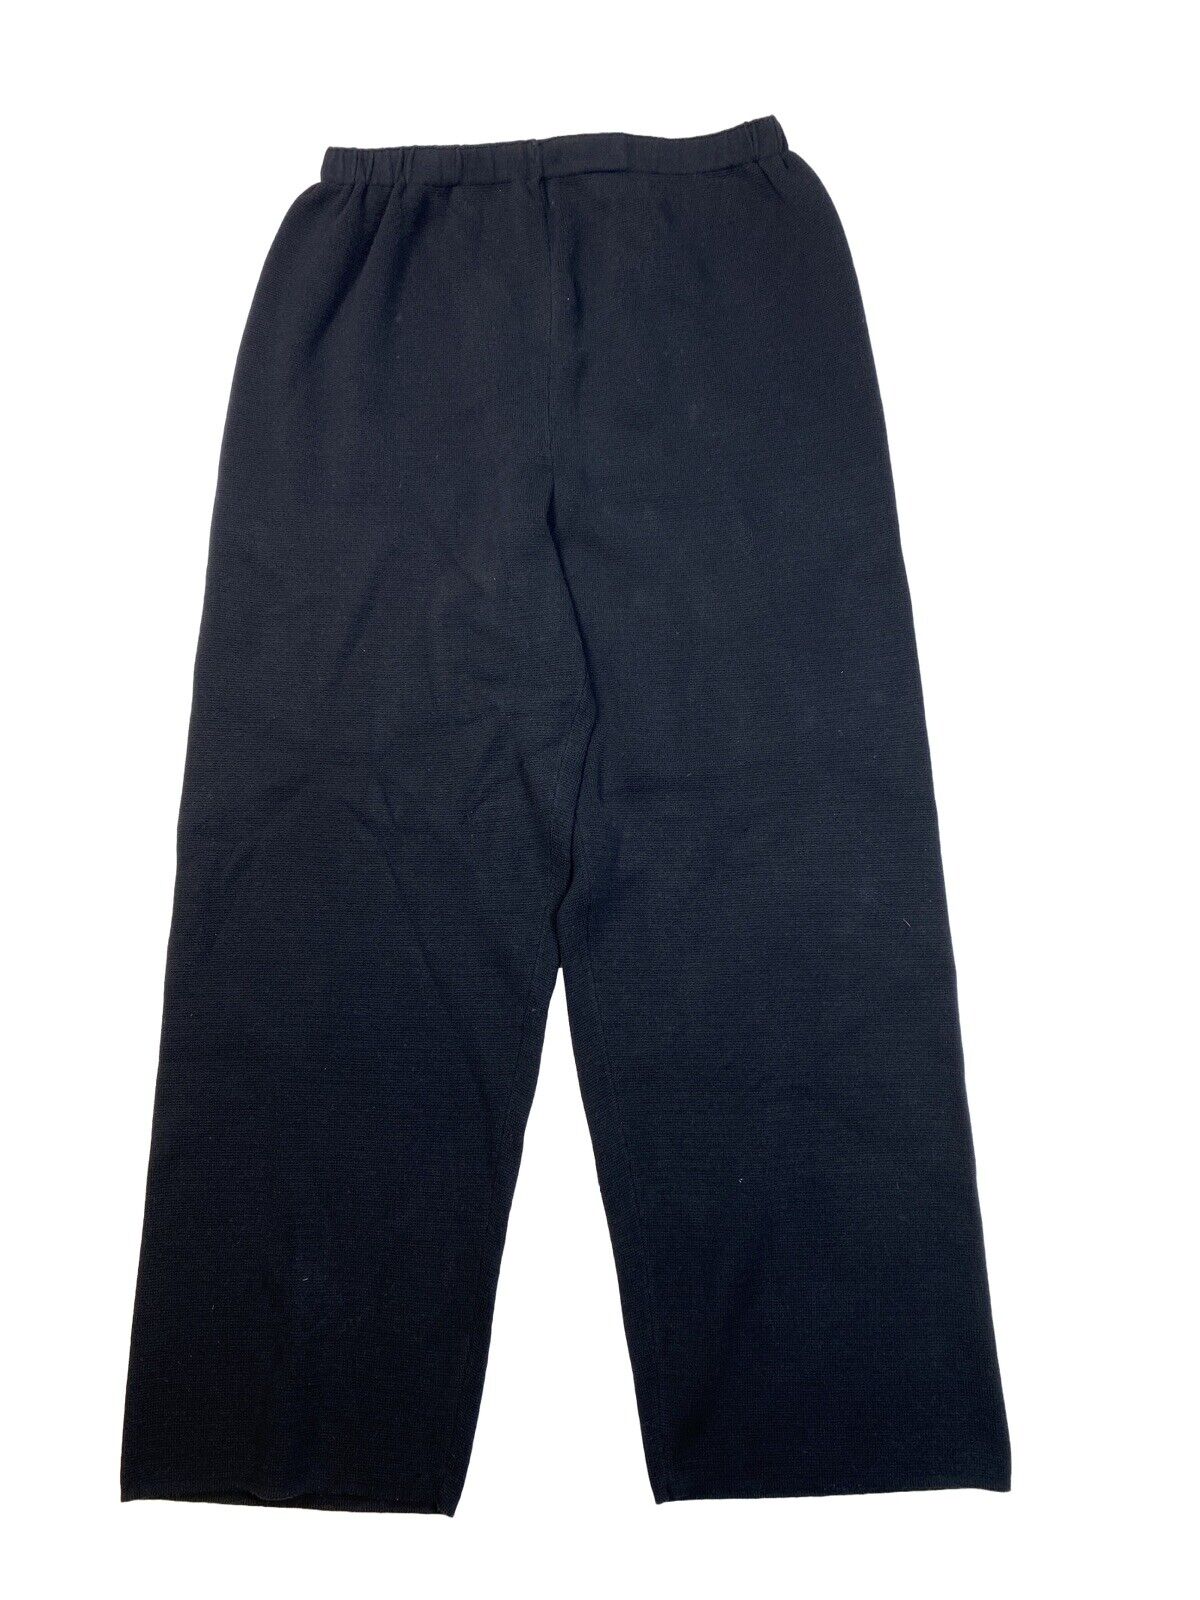 Chris Triola Women's Black Cotton Knit Sweater Wide Leg Lounge Pants - L